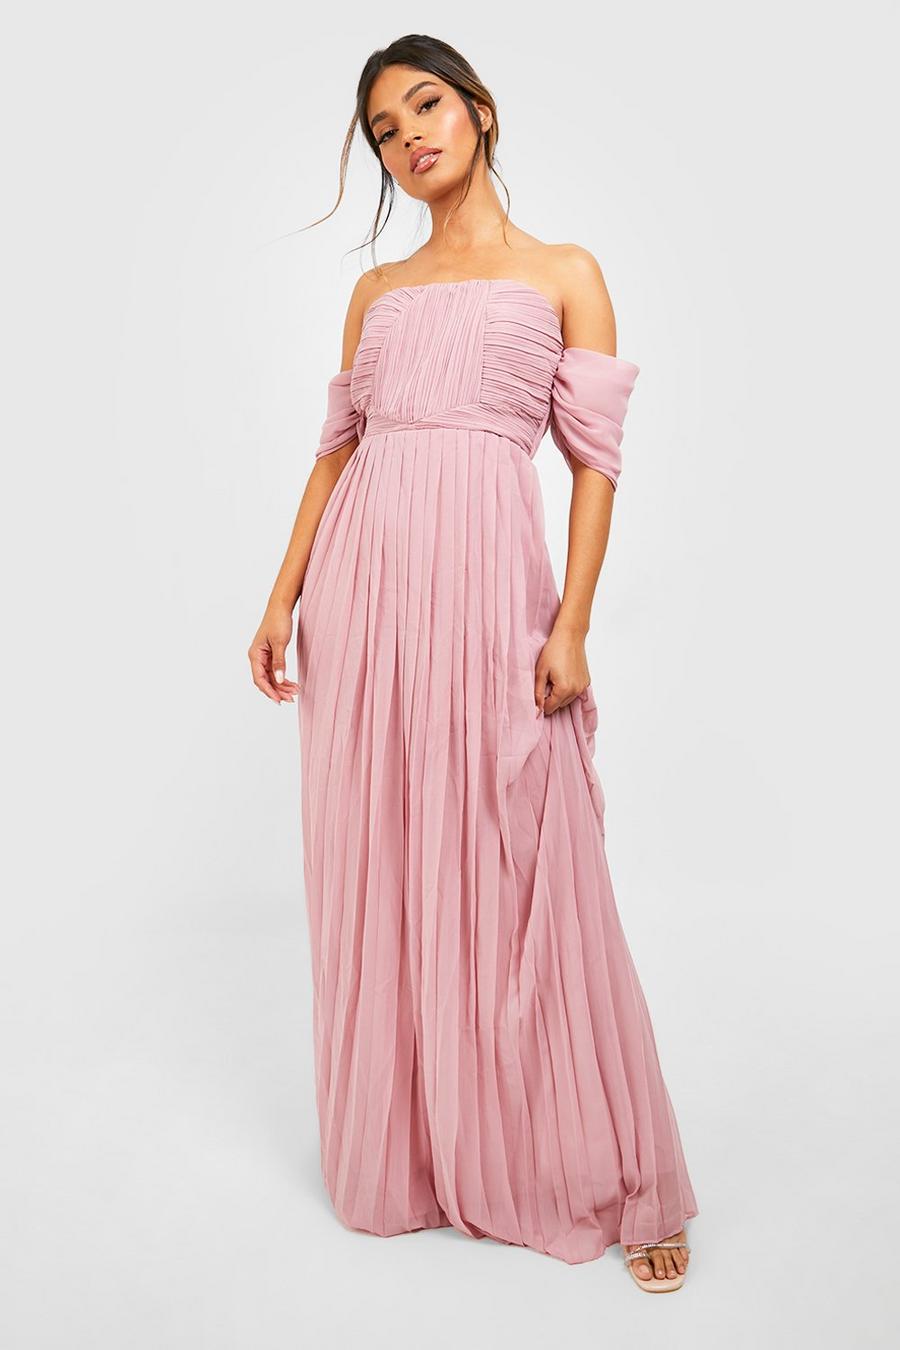 סמוק rosa שמלת שושבינה מקסי חשופת כתפיים עם קפלים image number 1